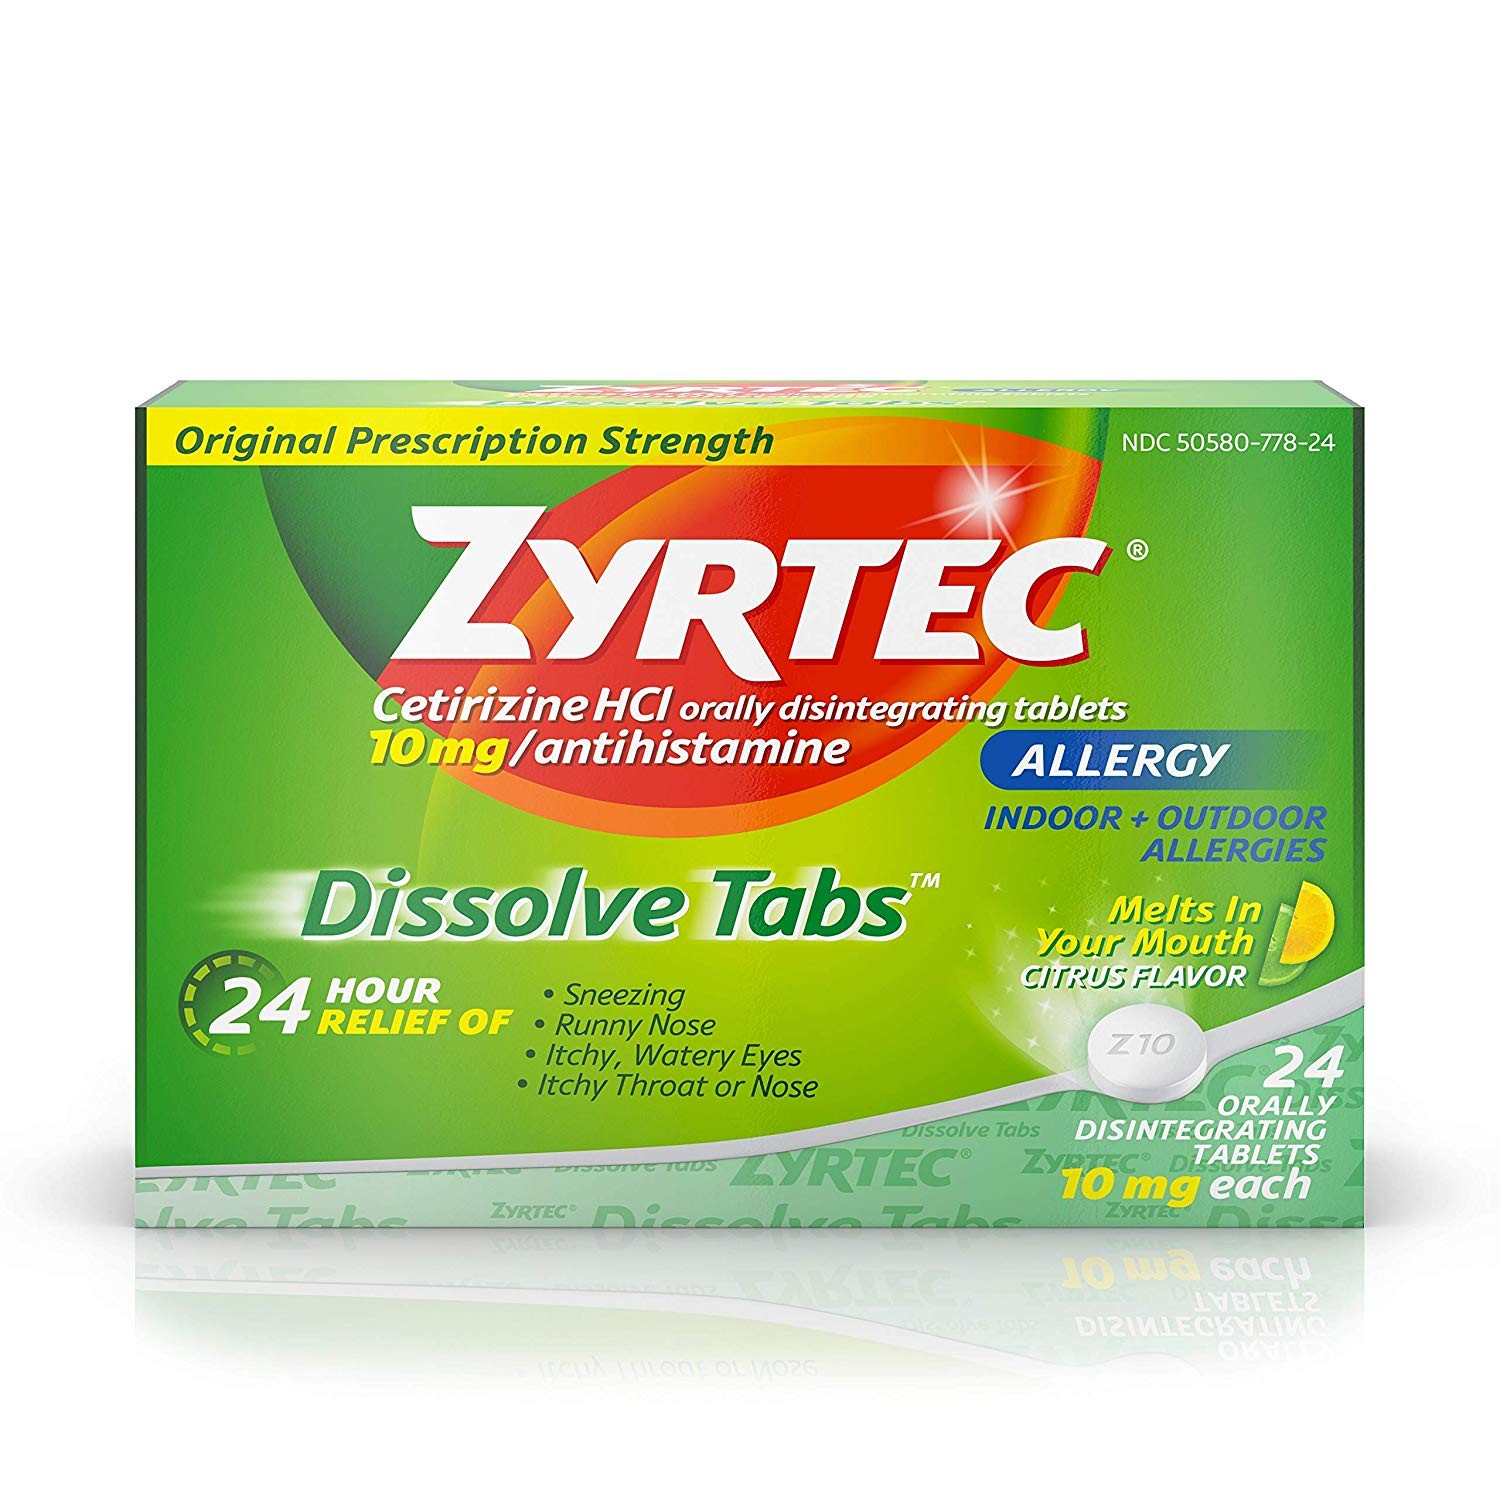 Thuốc Zyrtec (cetirizine): Chữa viêm mũi dị ứng và những lưu ý